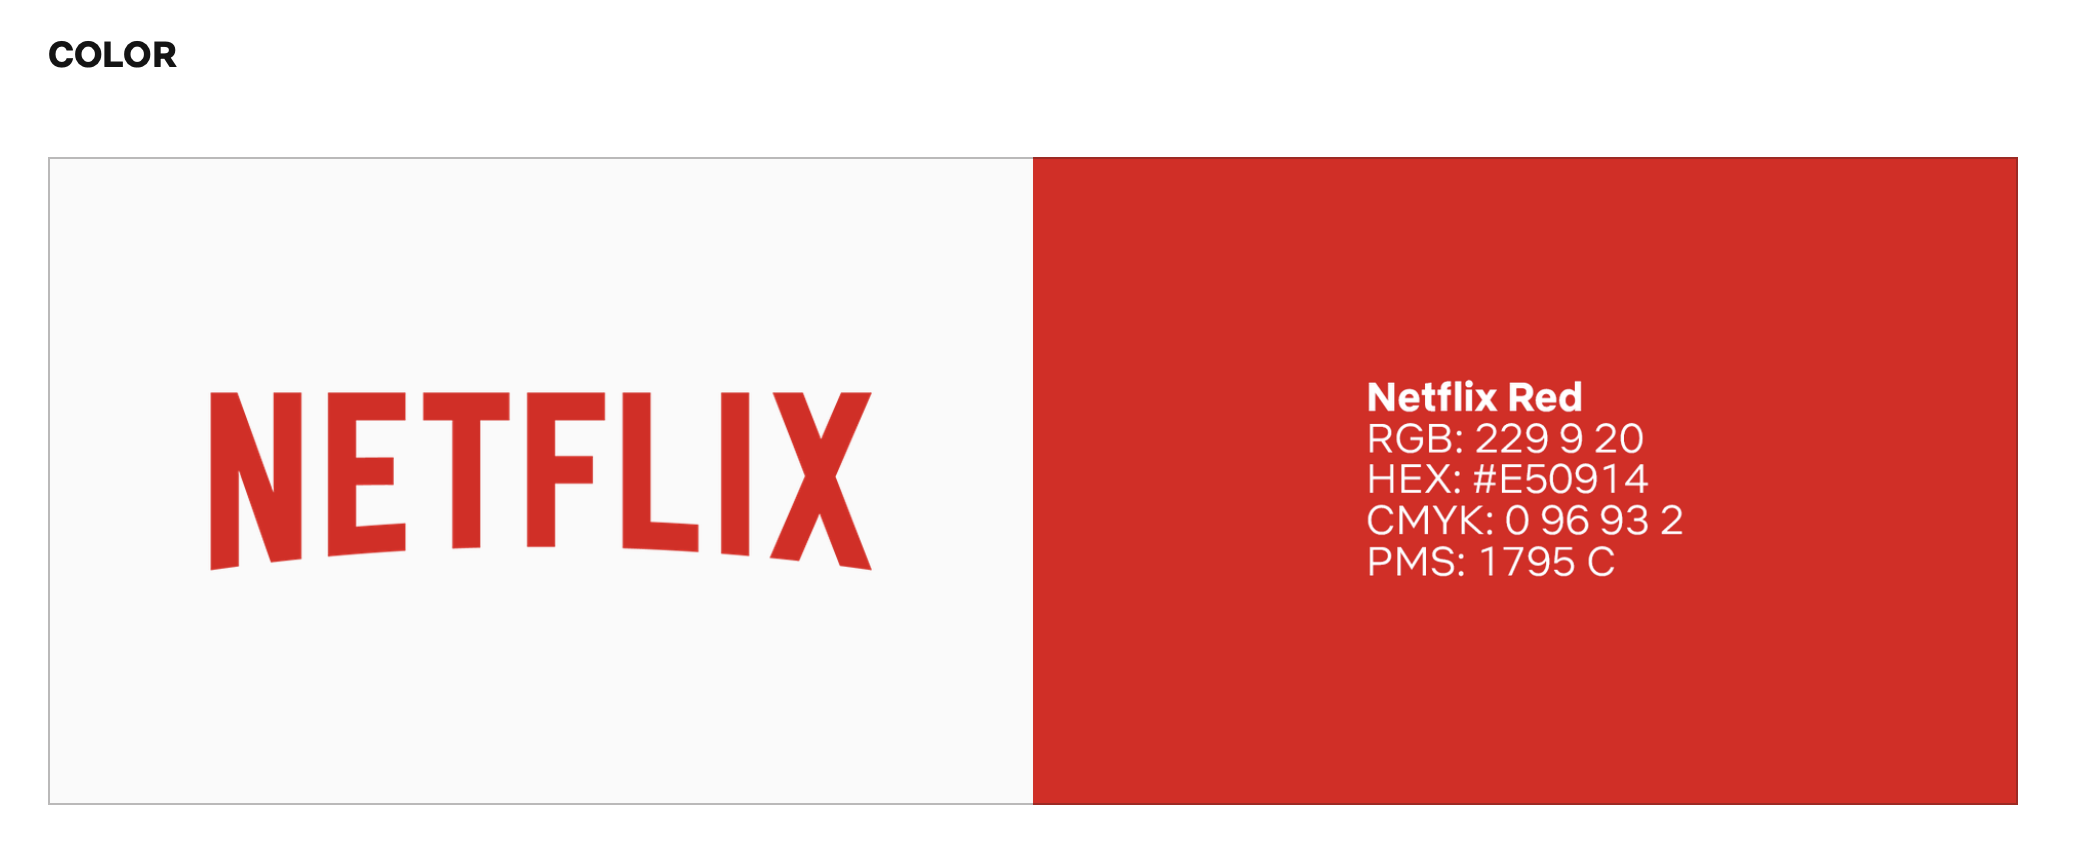 Netflix tech startup logo